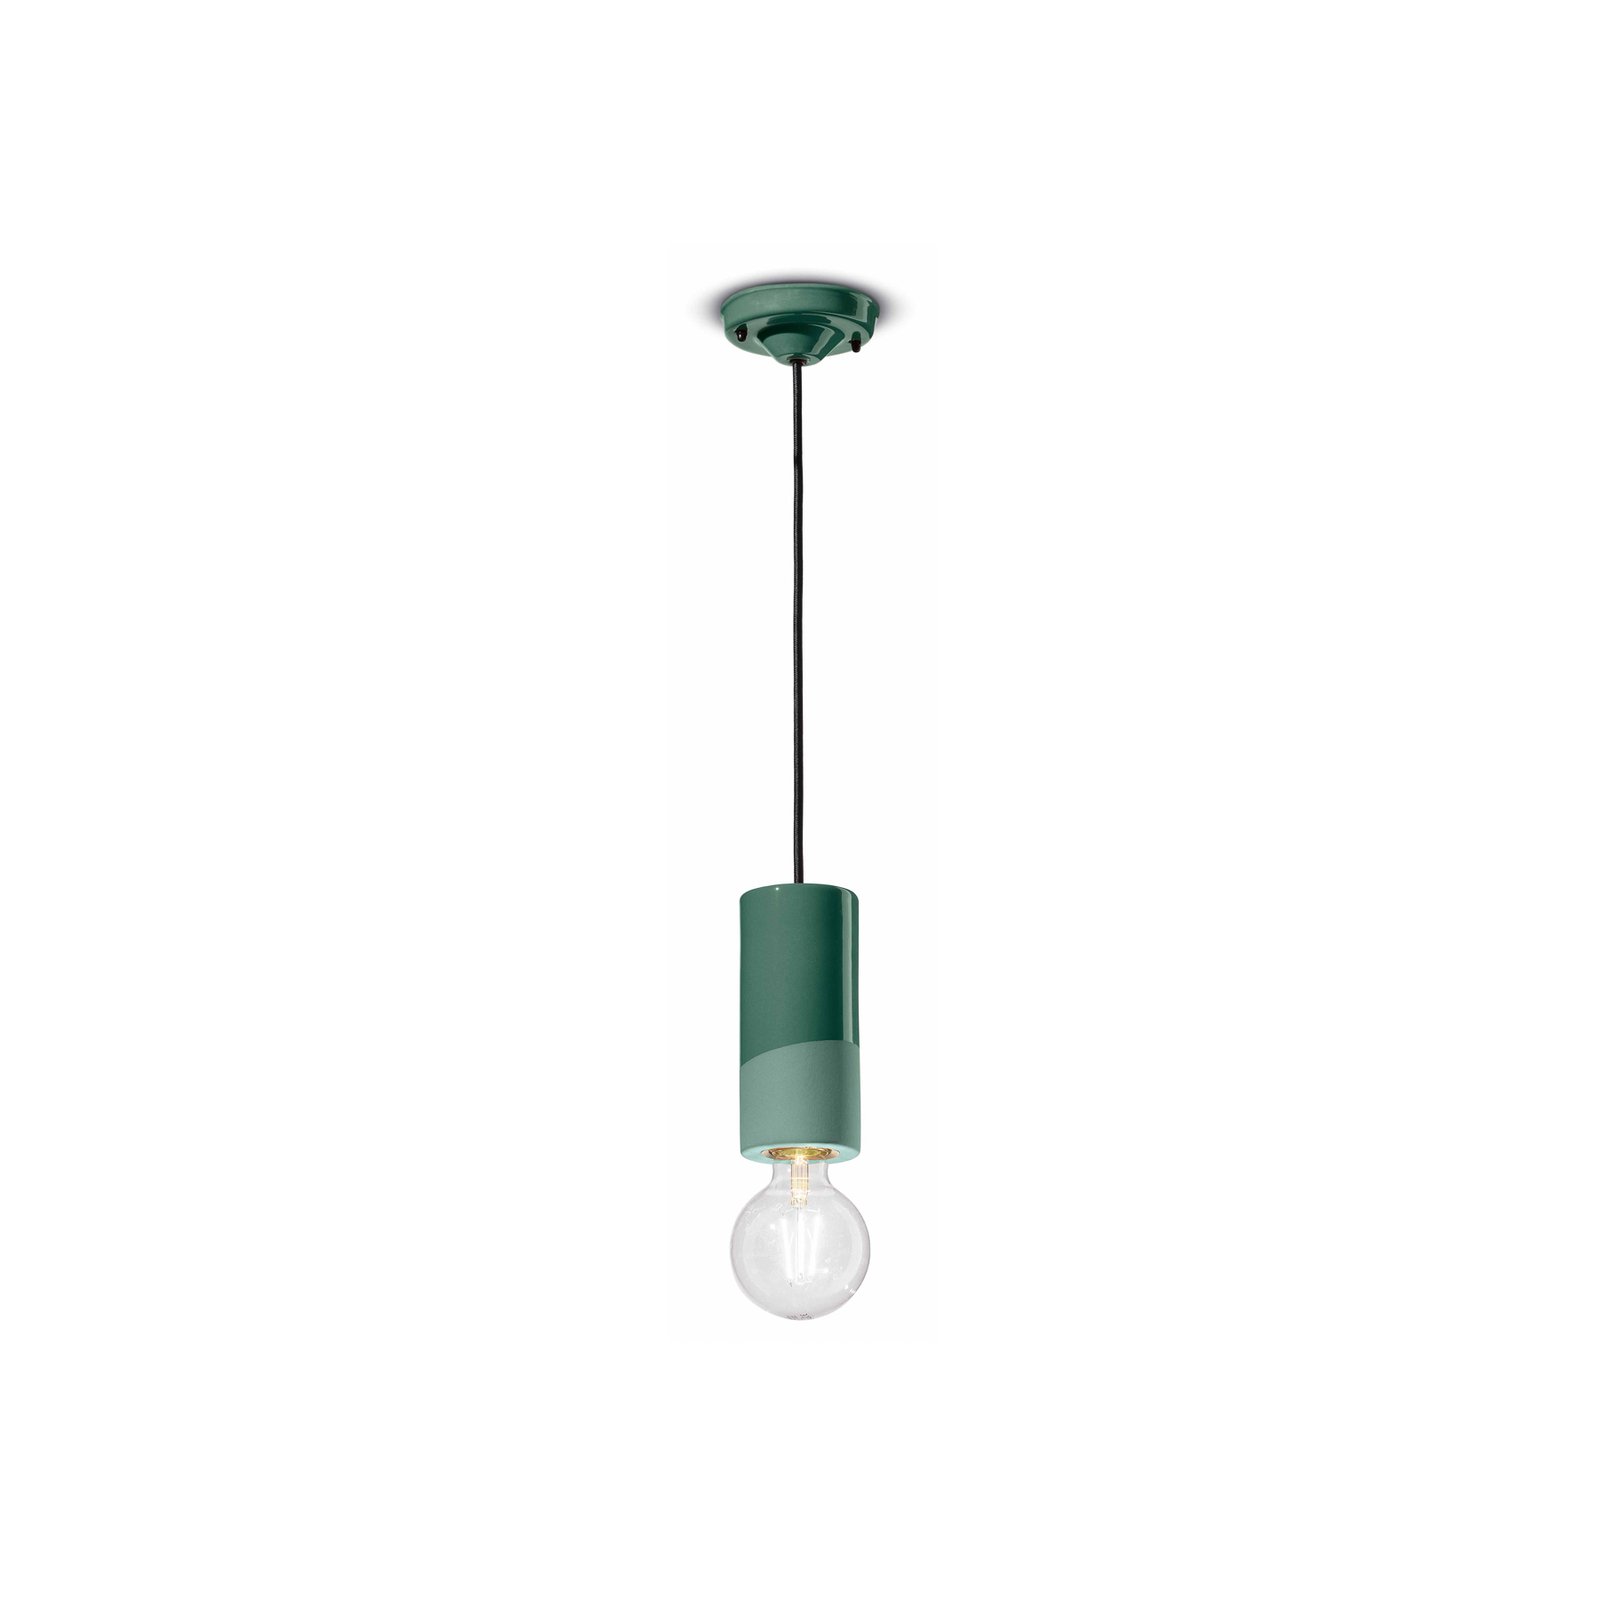 PI hanglamp, cilindervormig, Ø 8 cm groen